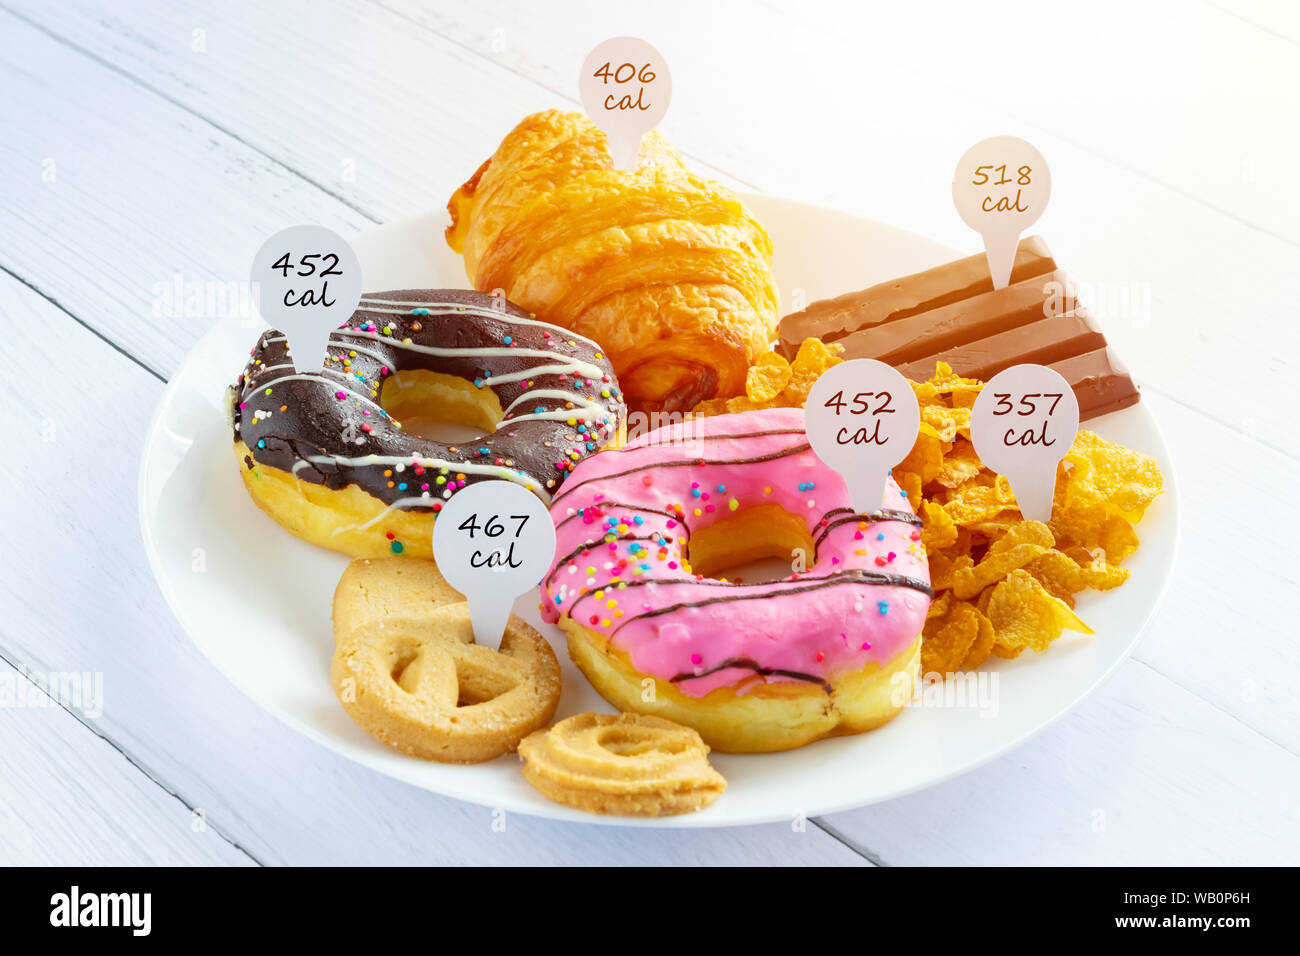 Conteo de calorías y el control de los alimentos concepto. donut ,croissant ,chocolate y galletas con etiqueta de cantidad de calorías para la medición de calorías Foto de stock